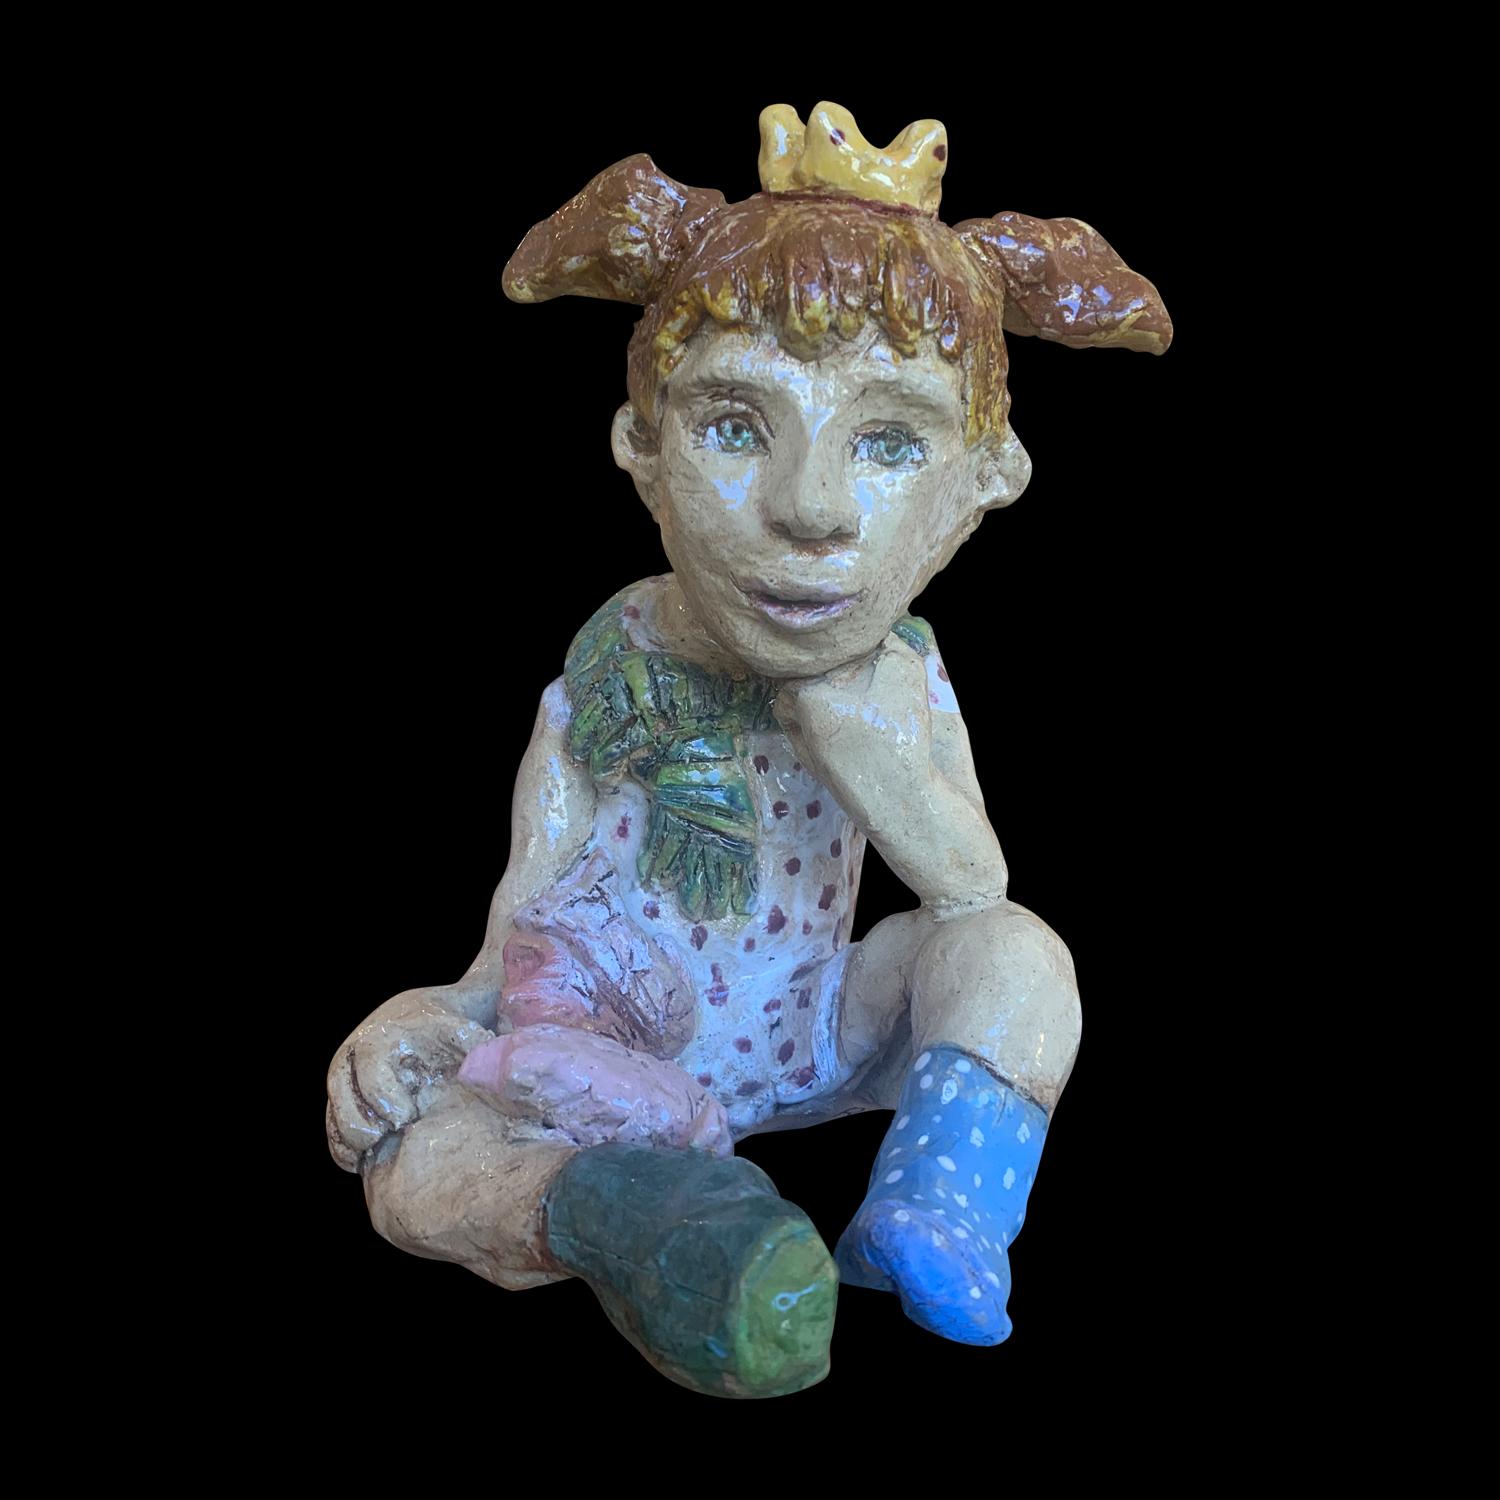 Adi Rom Figurative Sculpture - Little Girl In Play Figurative Art Glazed Ceramic Sculpture 1 of 1 by Adi